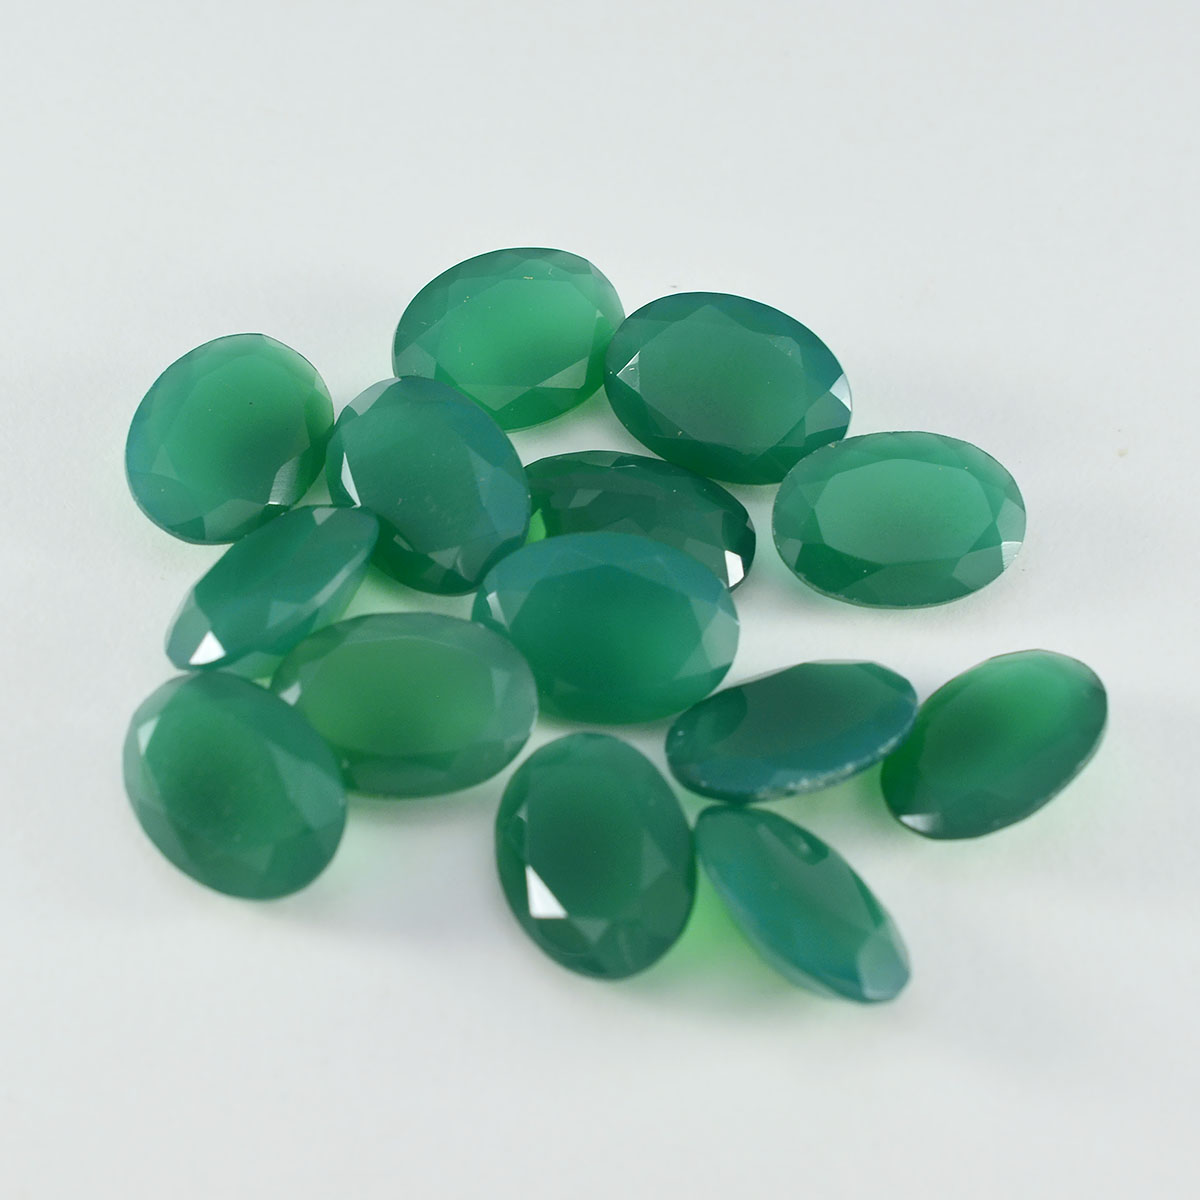 Riyogems 1PC echte groene onyx gefacetteerde 6x8 mm ovale vorm mooie kwaliteit losse edelsteen